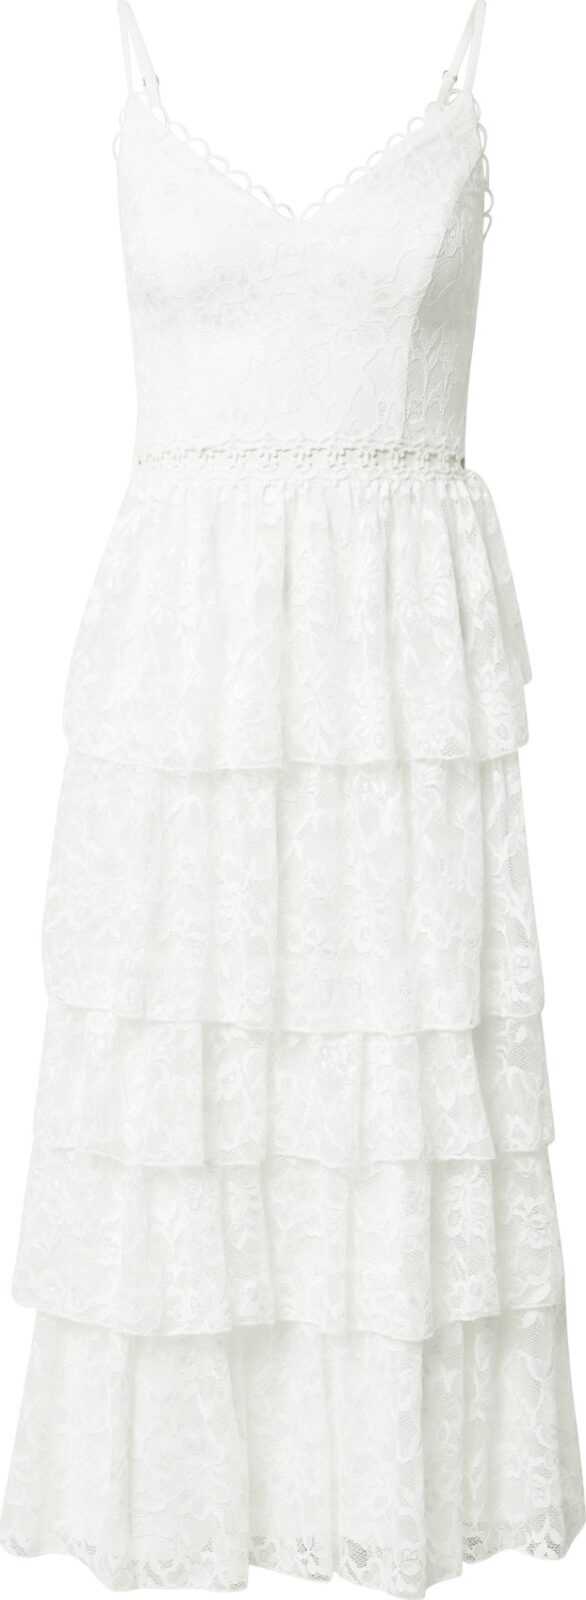 Skirt & Stiletto Koktejlové šaty bílá